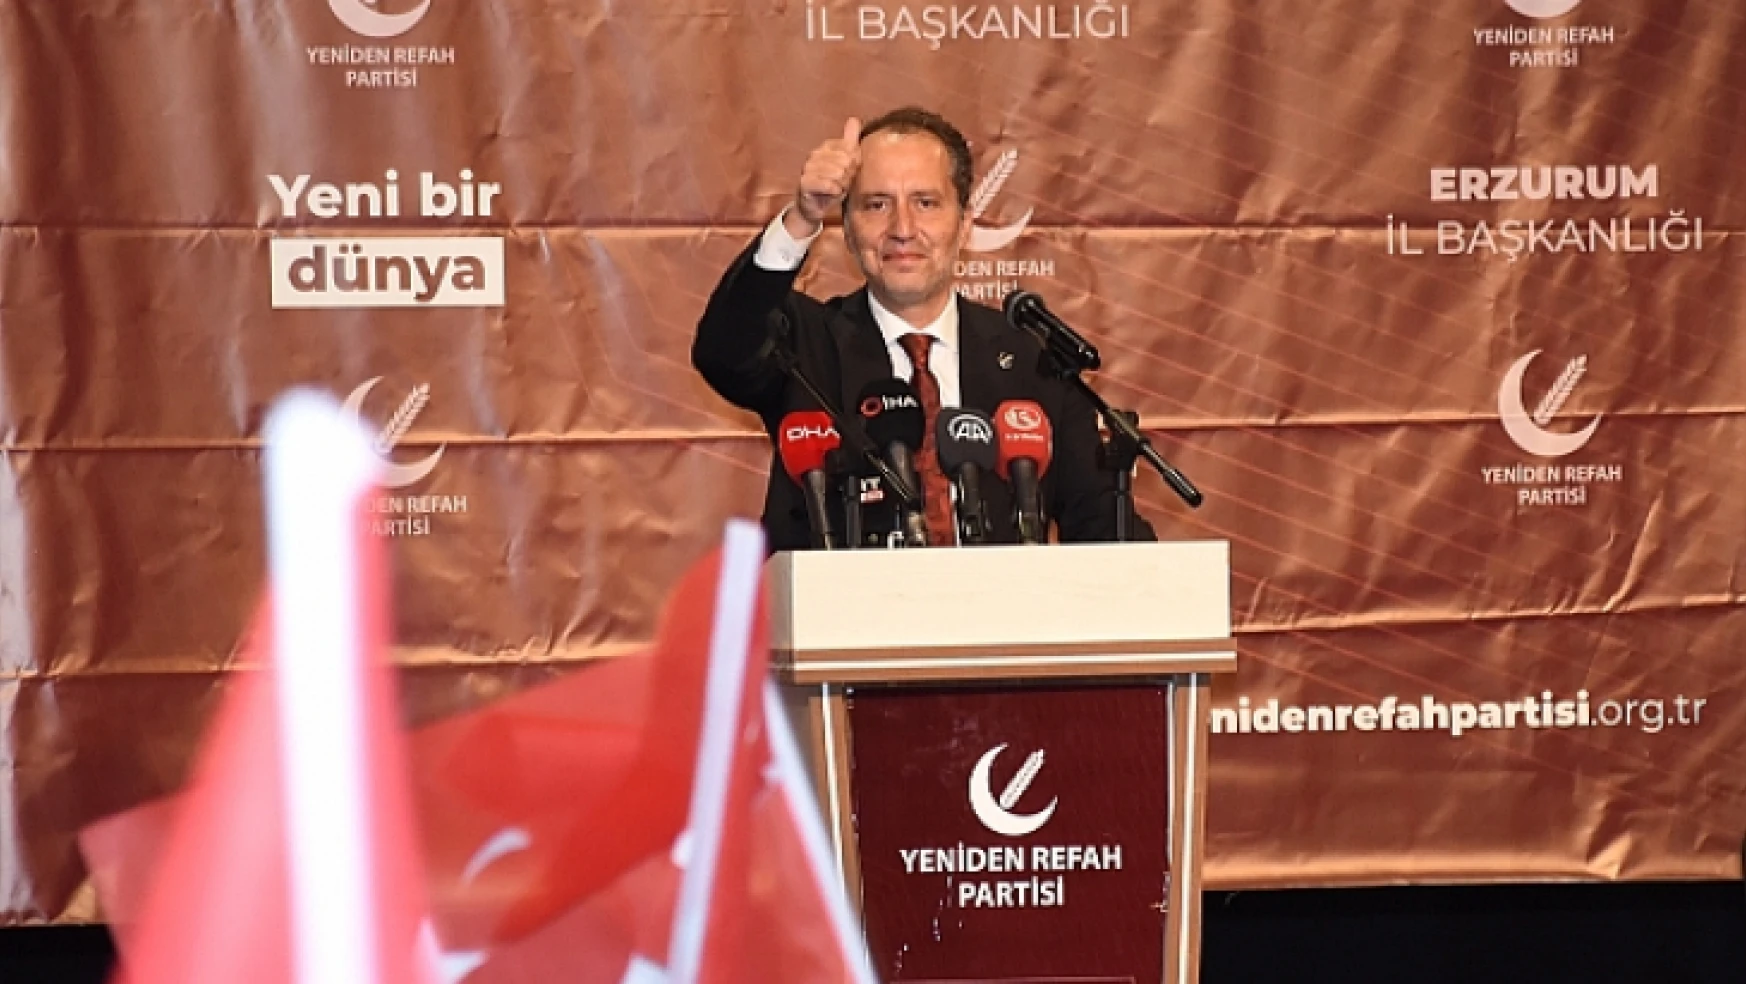 Yeniden Refah Partisi Genel Başkanı Erbakan, partisinin Erzurum kongresinde konuştu